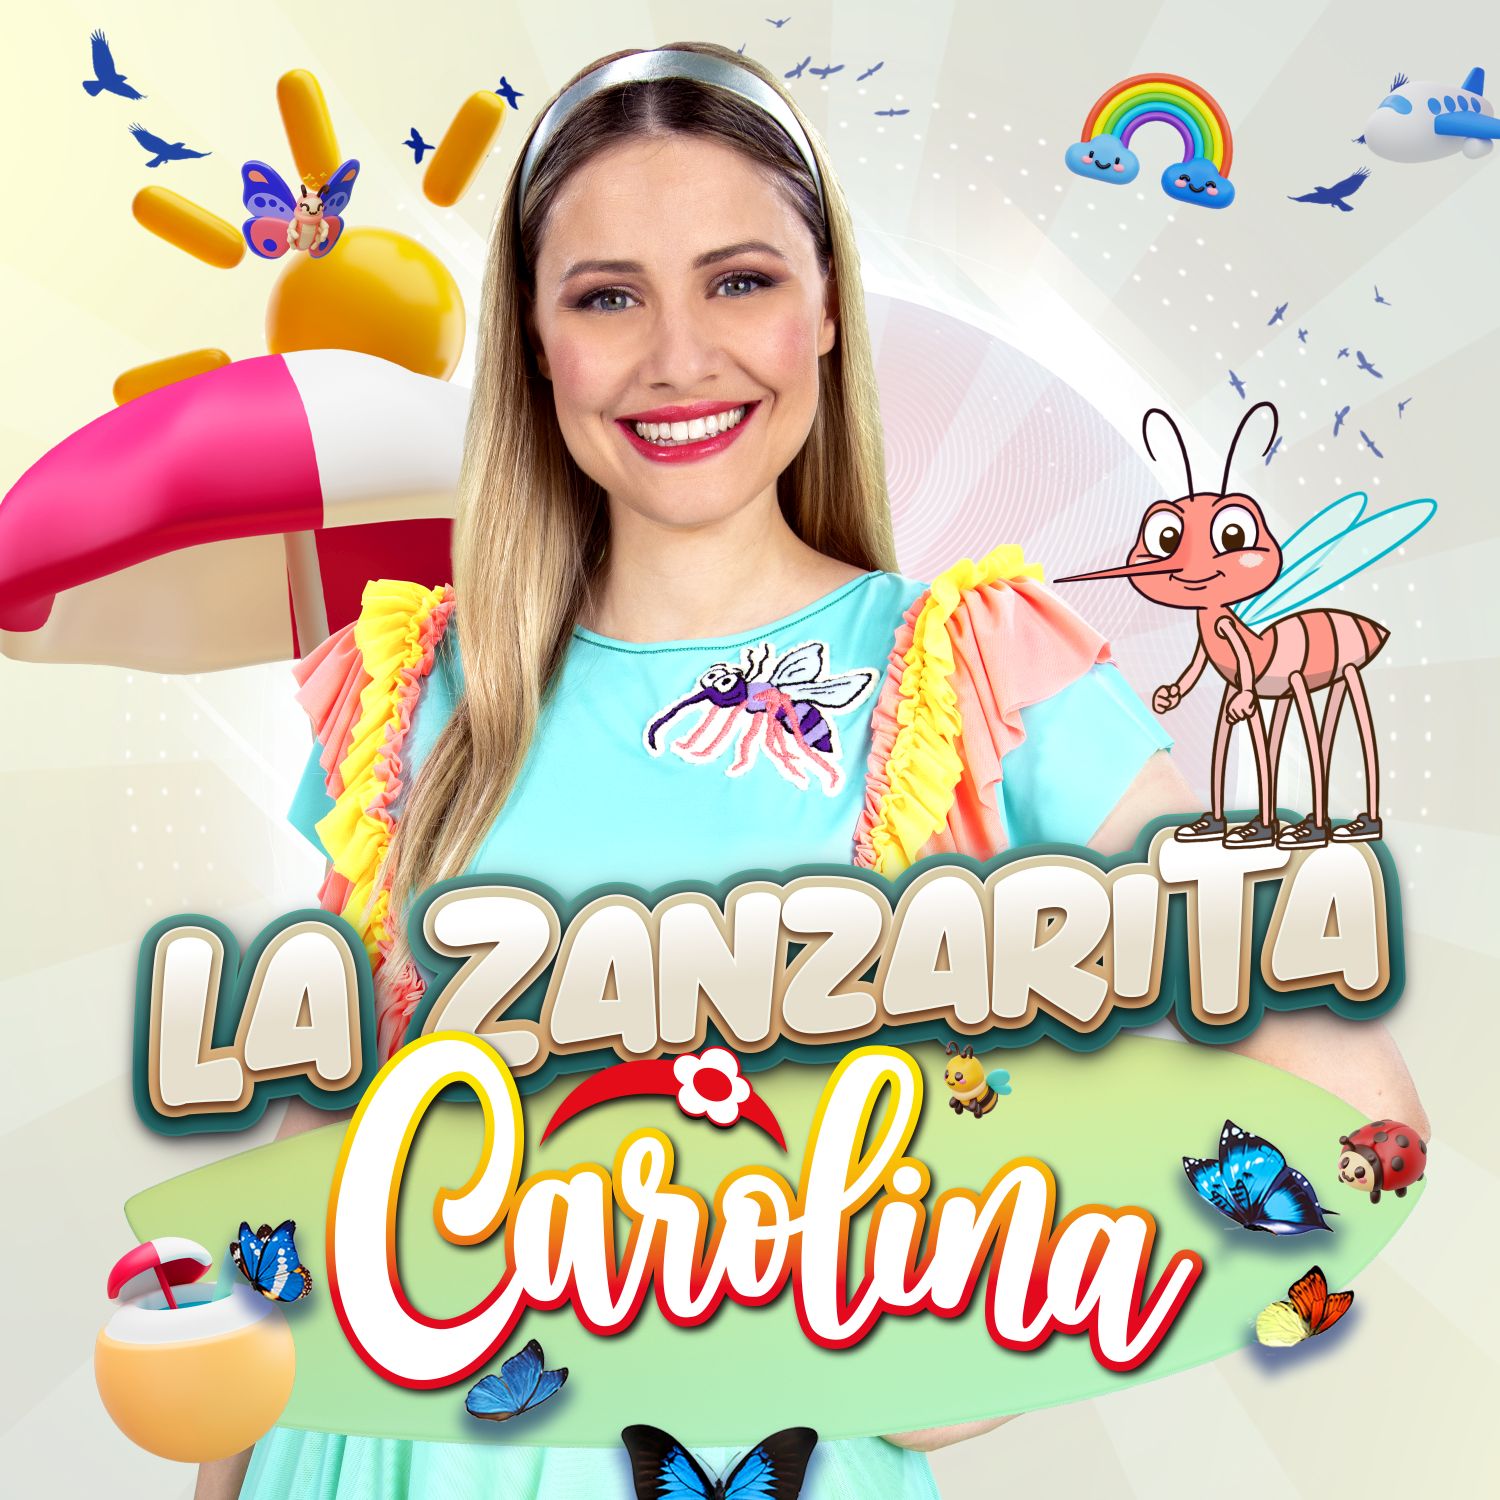 Carolina Benvenga: è arrivata “La Zanzarita”, la canzone dell’estate per far ballare grandi e piccini!